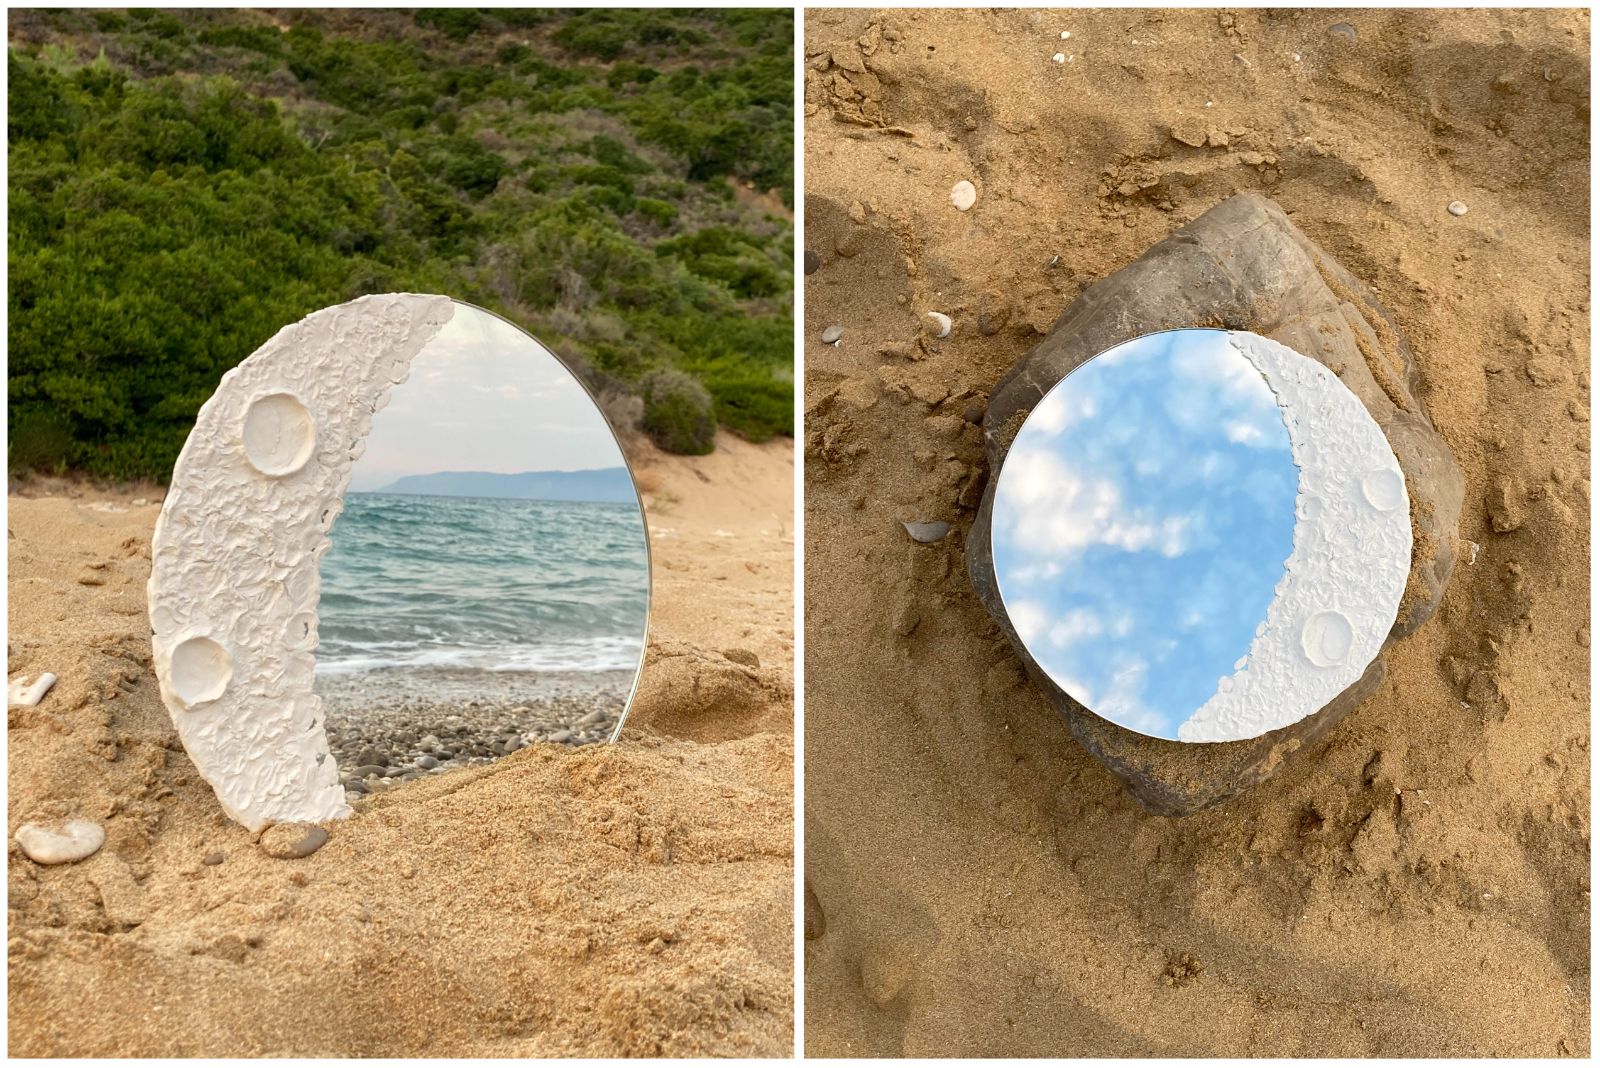 My Moon Mirror: Magična ručno rađena ogledala inspirirana Mjesecom